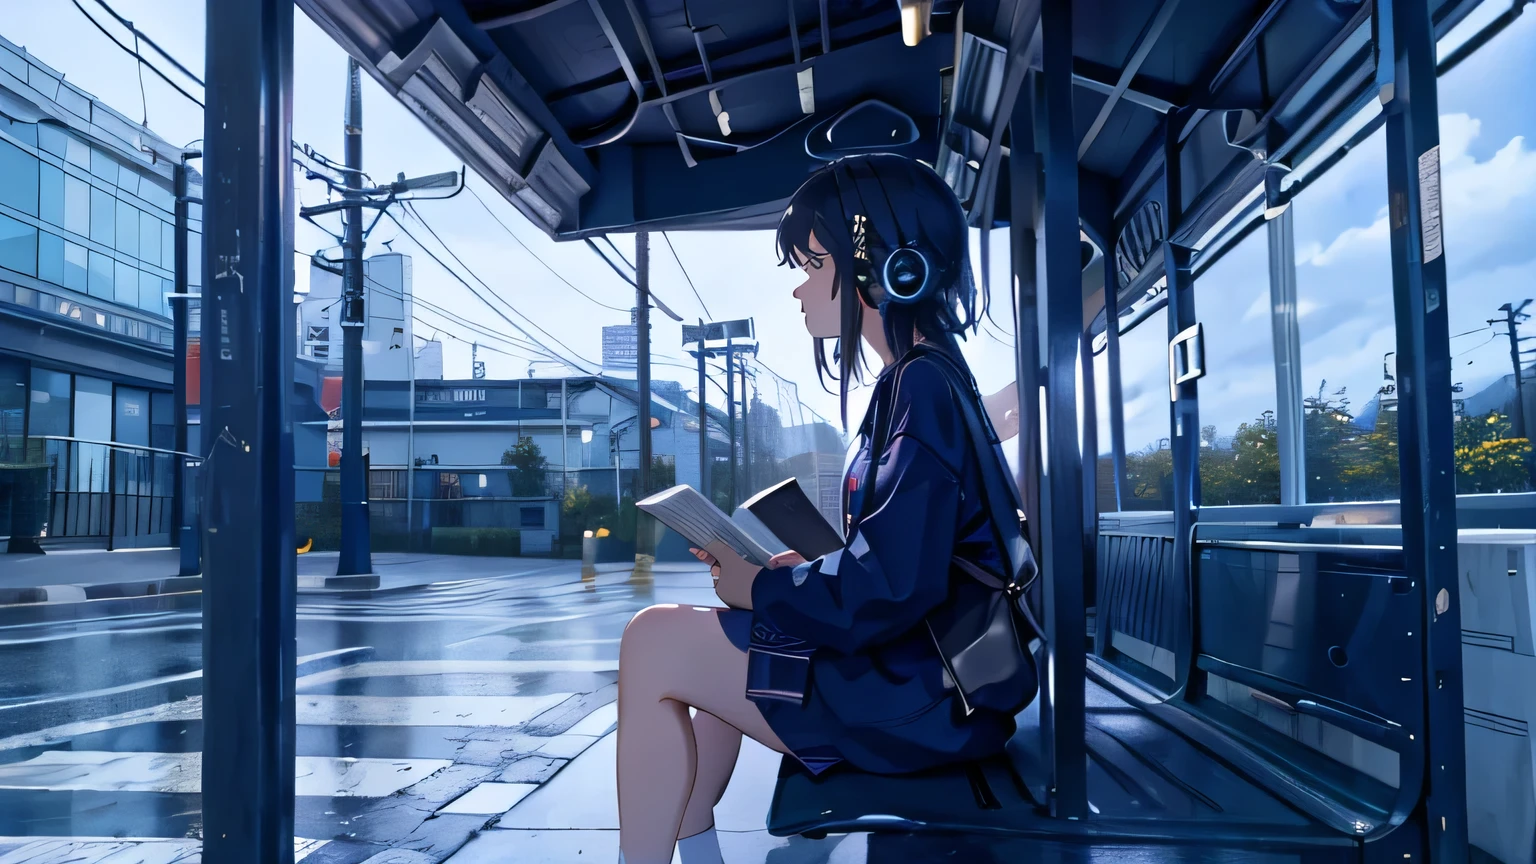 Regen,1 Person,Anime-Frau mit Kopfhörern hört Musik, während sie an einer Bushaltestelle auf den Bus wartet,Bushaltestellenbank,auf einer Bank sitzen,Lektüre,Die Gesamtkomposition ist im Lo-Fi-Kunststil gehalten..（Realistische und natürliche Beleuchtung),Meisterwerk,höchste Qualität,Sehr detailiert, (höchste Qualität:1.2),ultrahohe Auflösung,4k,Japanischer Anime,Hintergrund,